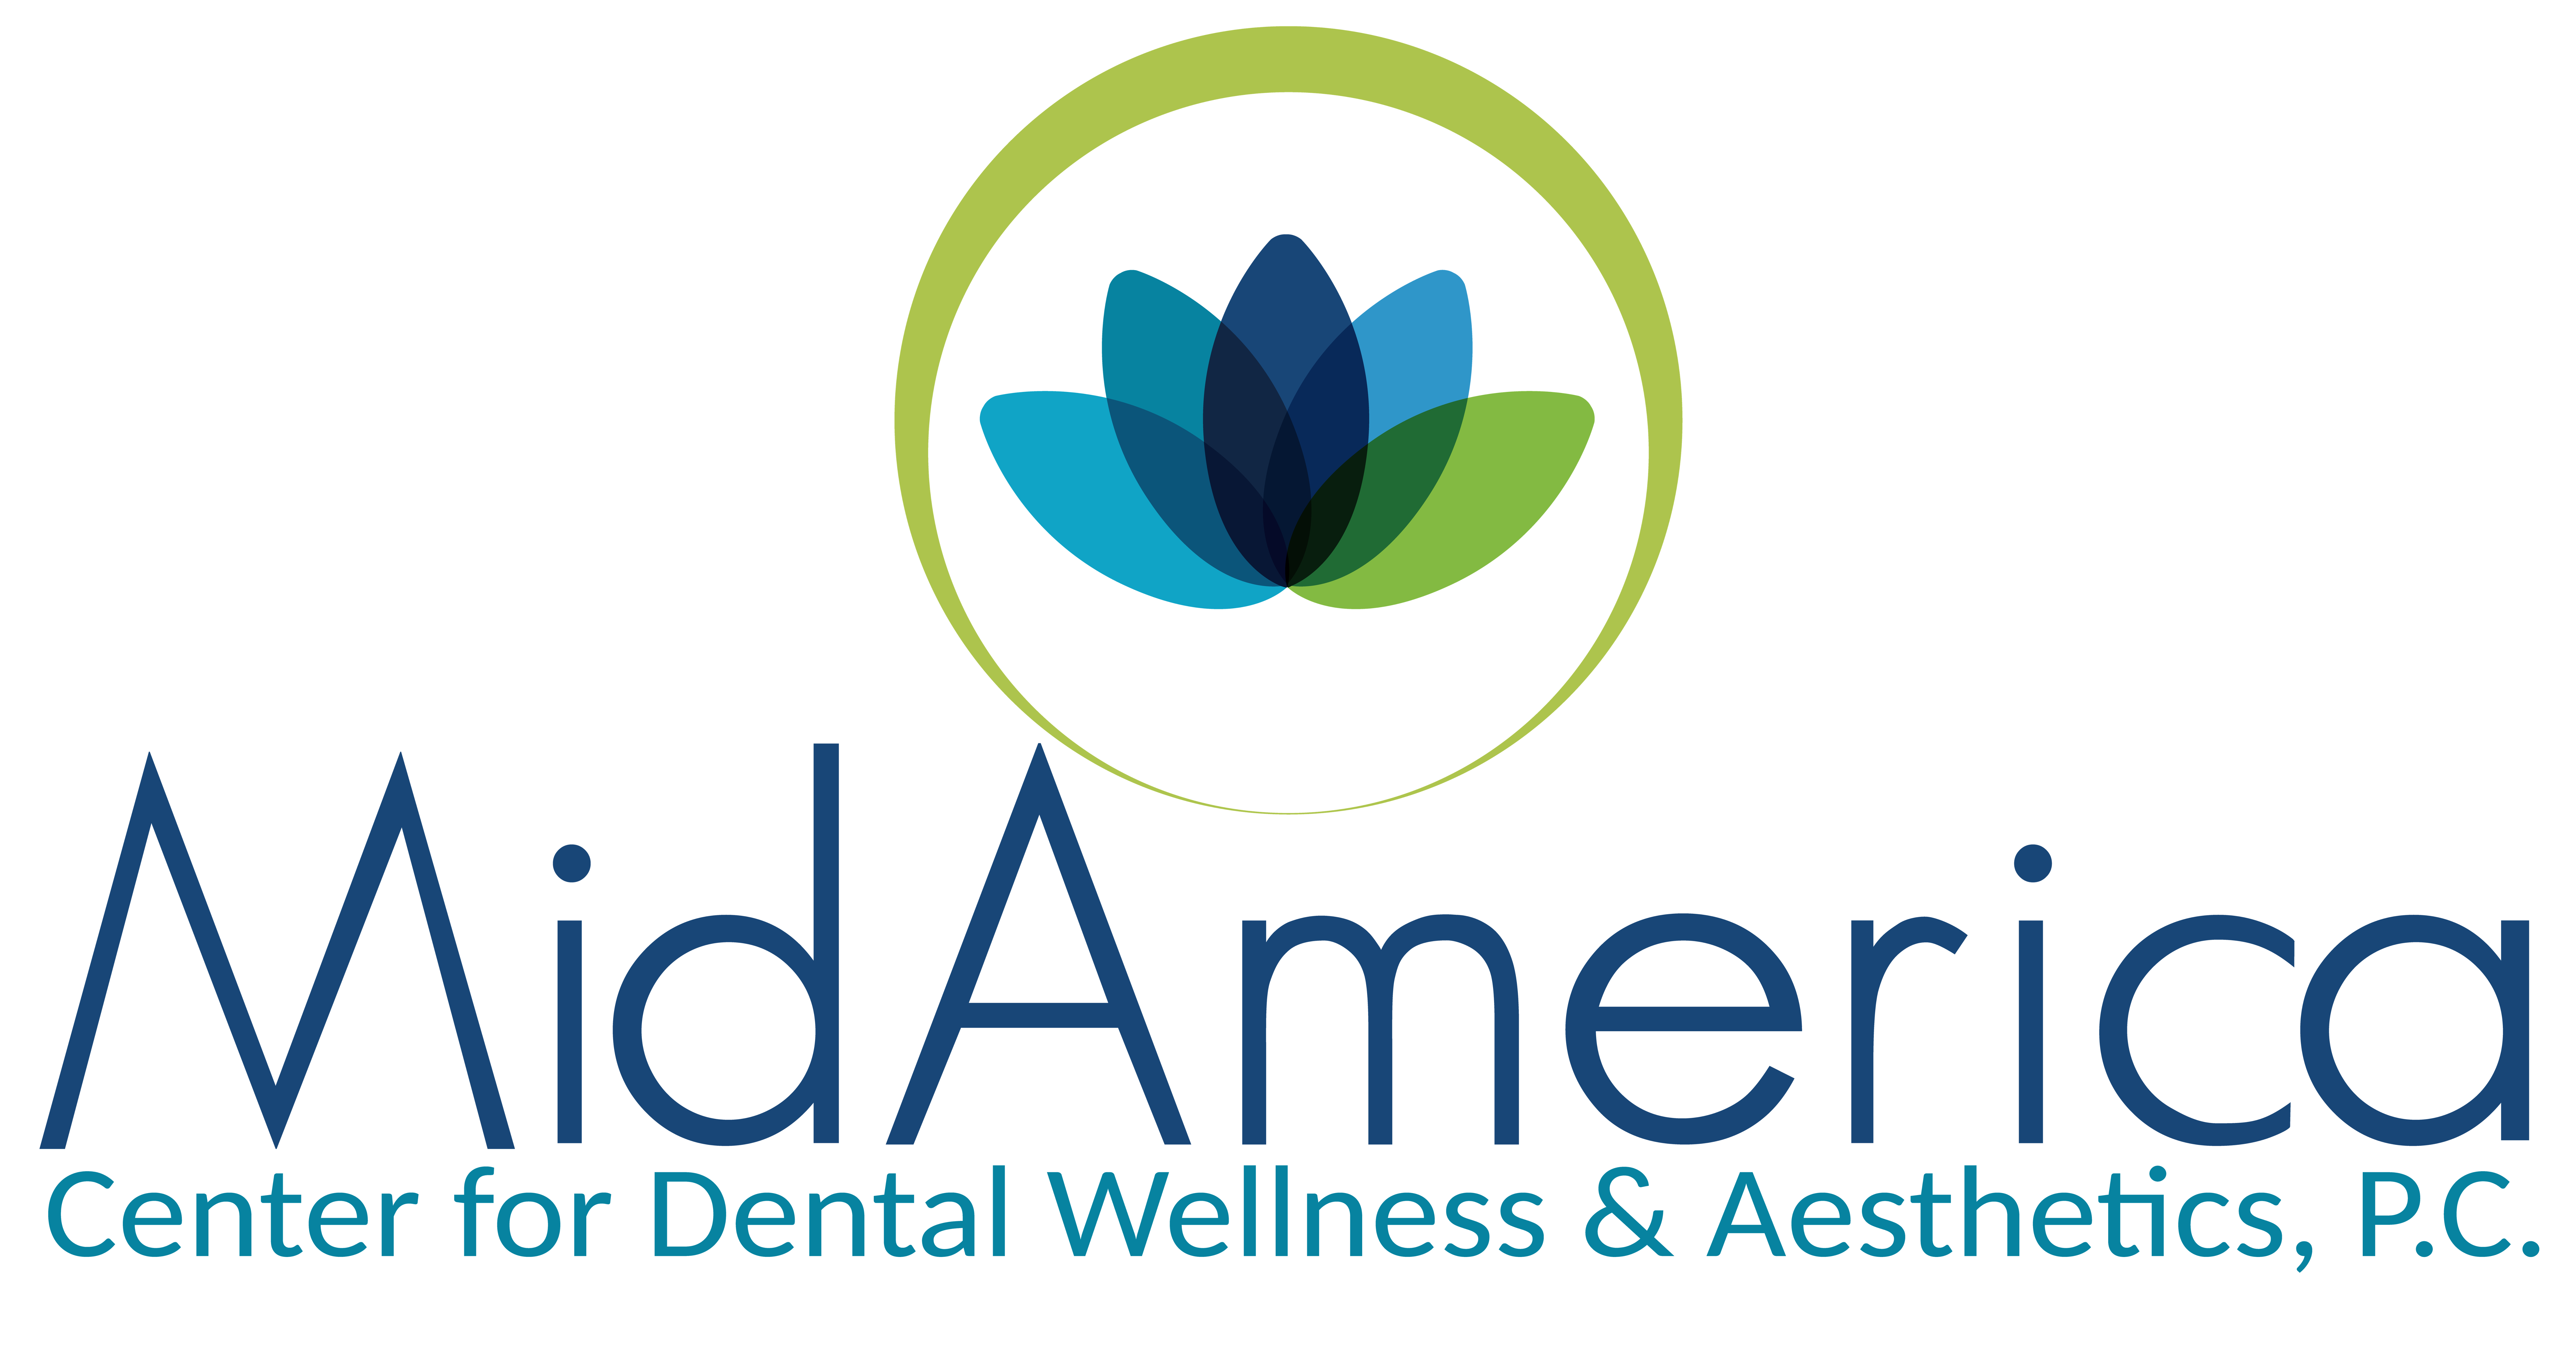 MidAmerica Center for Dental Wellness & Aesthetics, P.C.